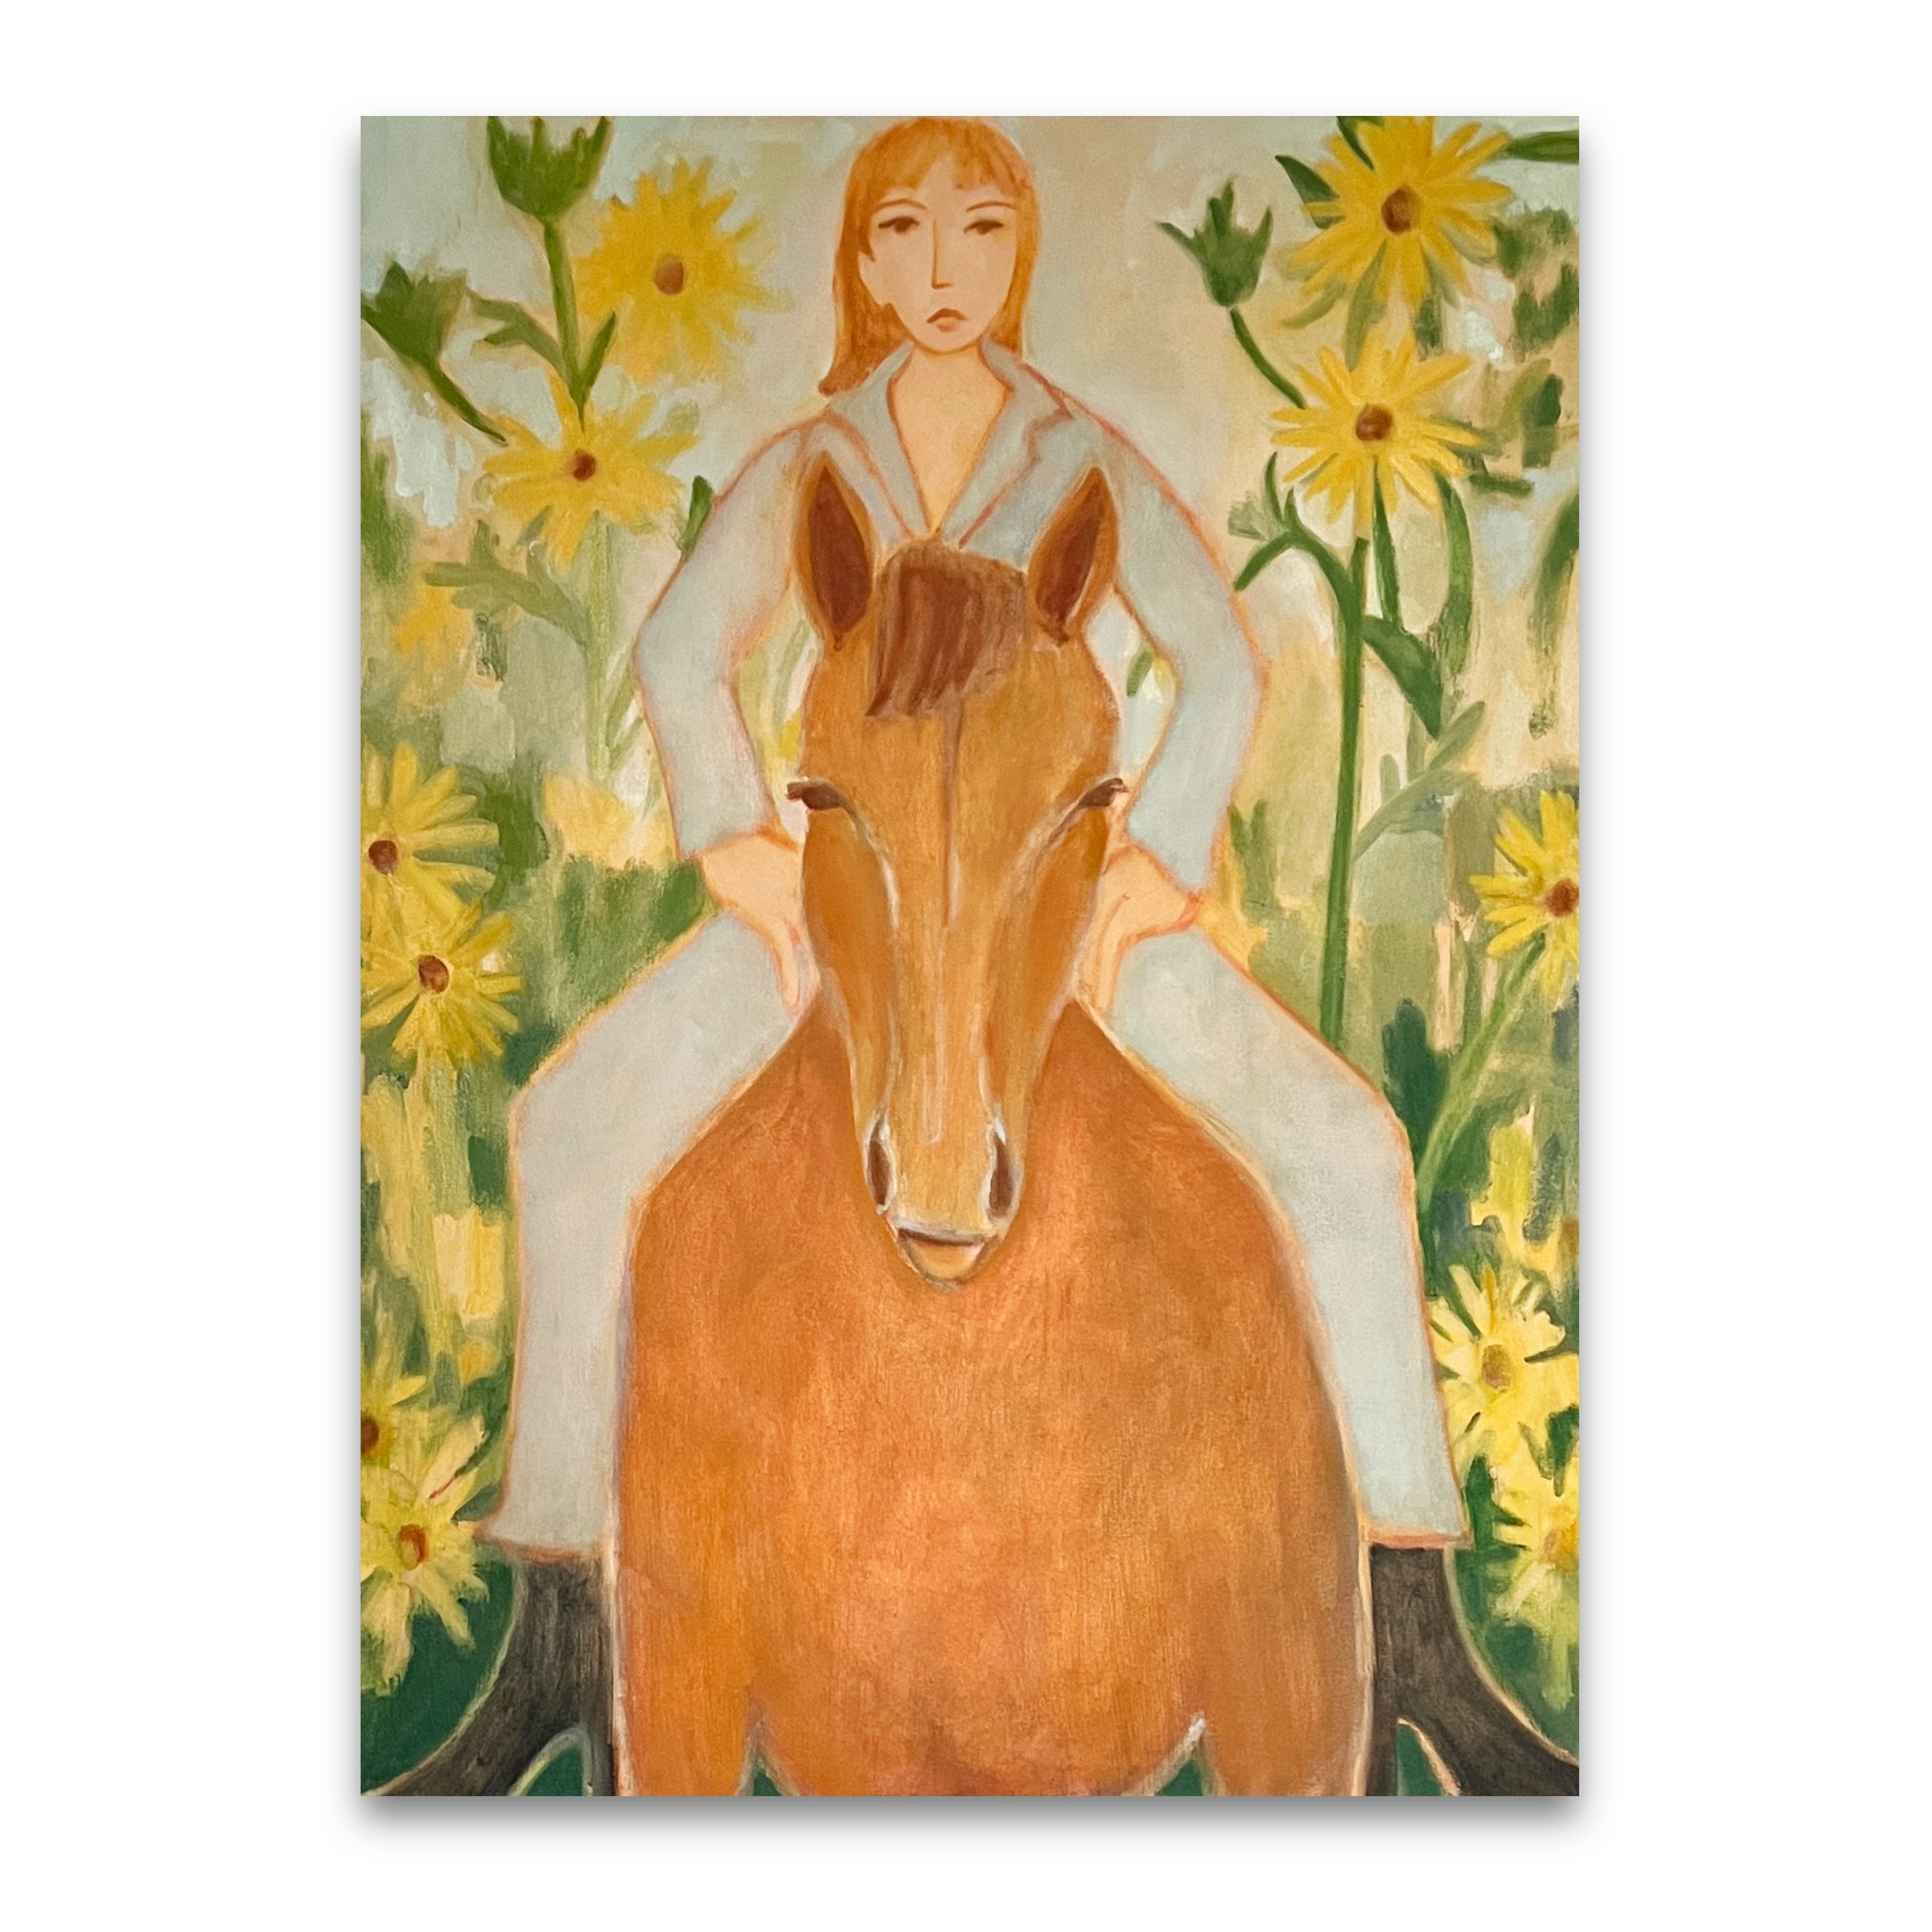 Meghan_Borah_Girl_and_Horse_with_Sunflowers.jpg